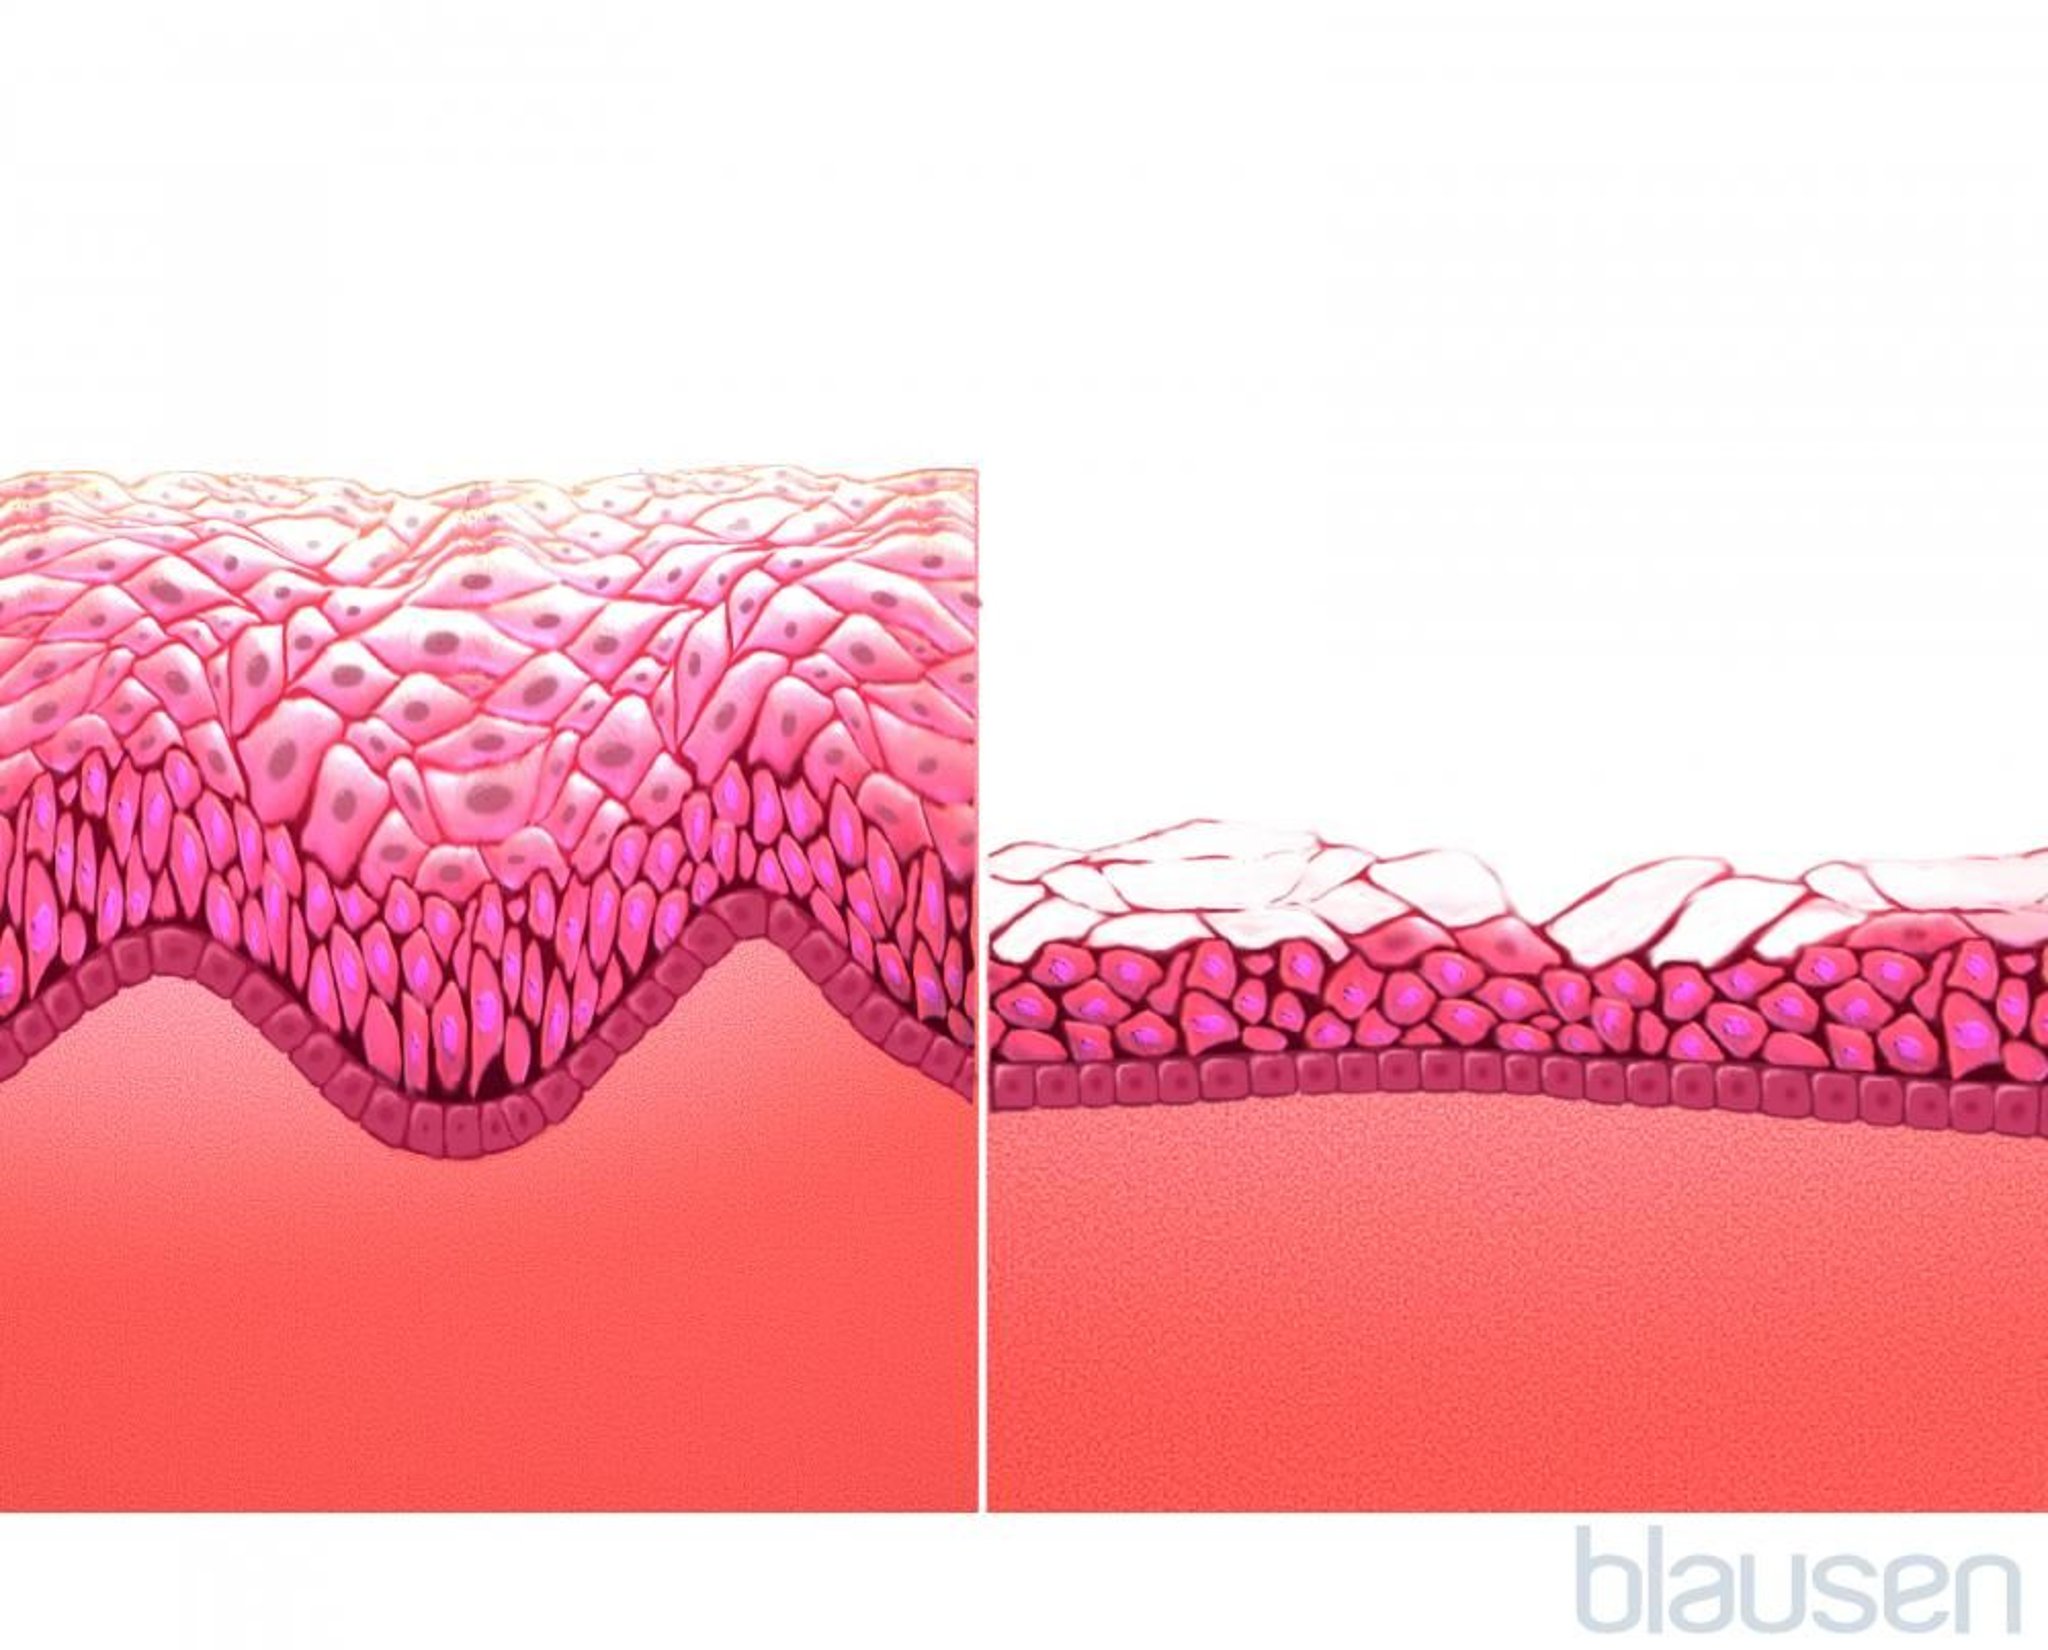 Mucosa vaginal (antes y después de la menopausia)